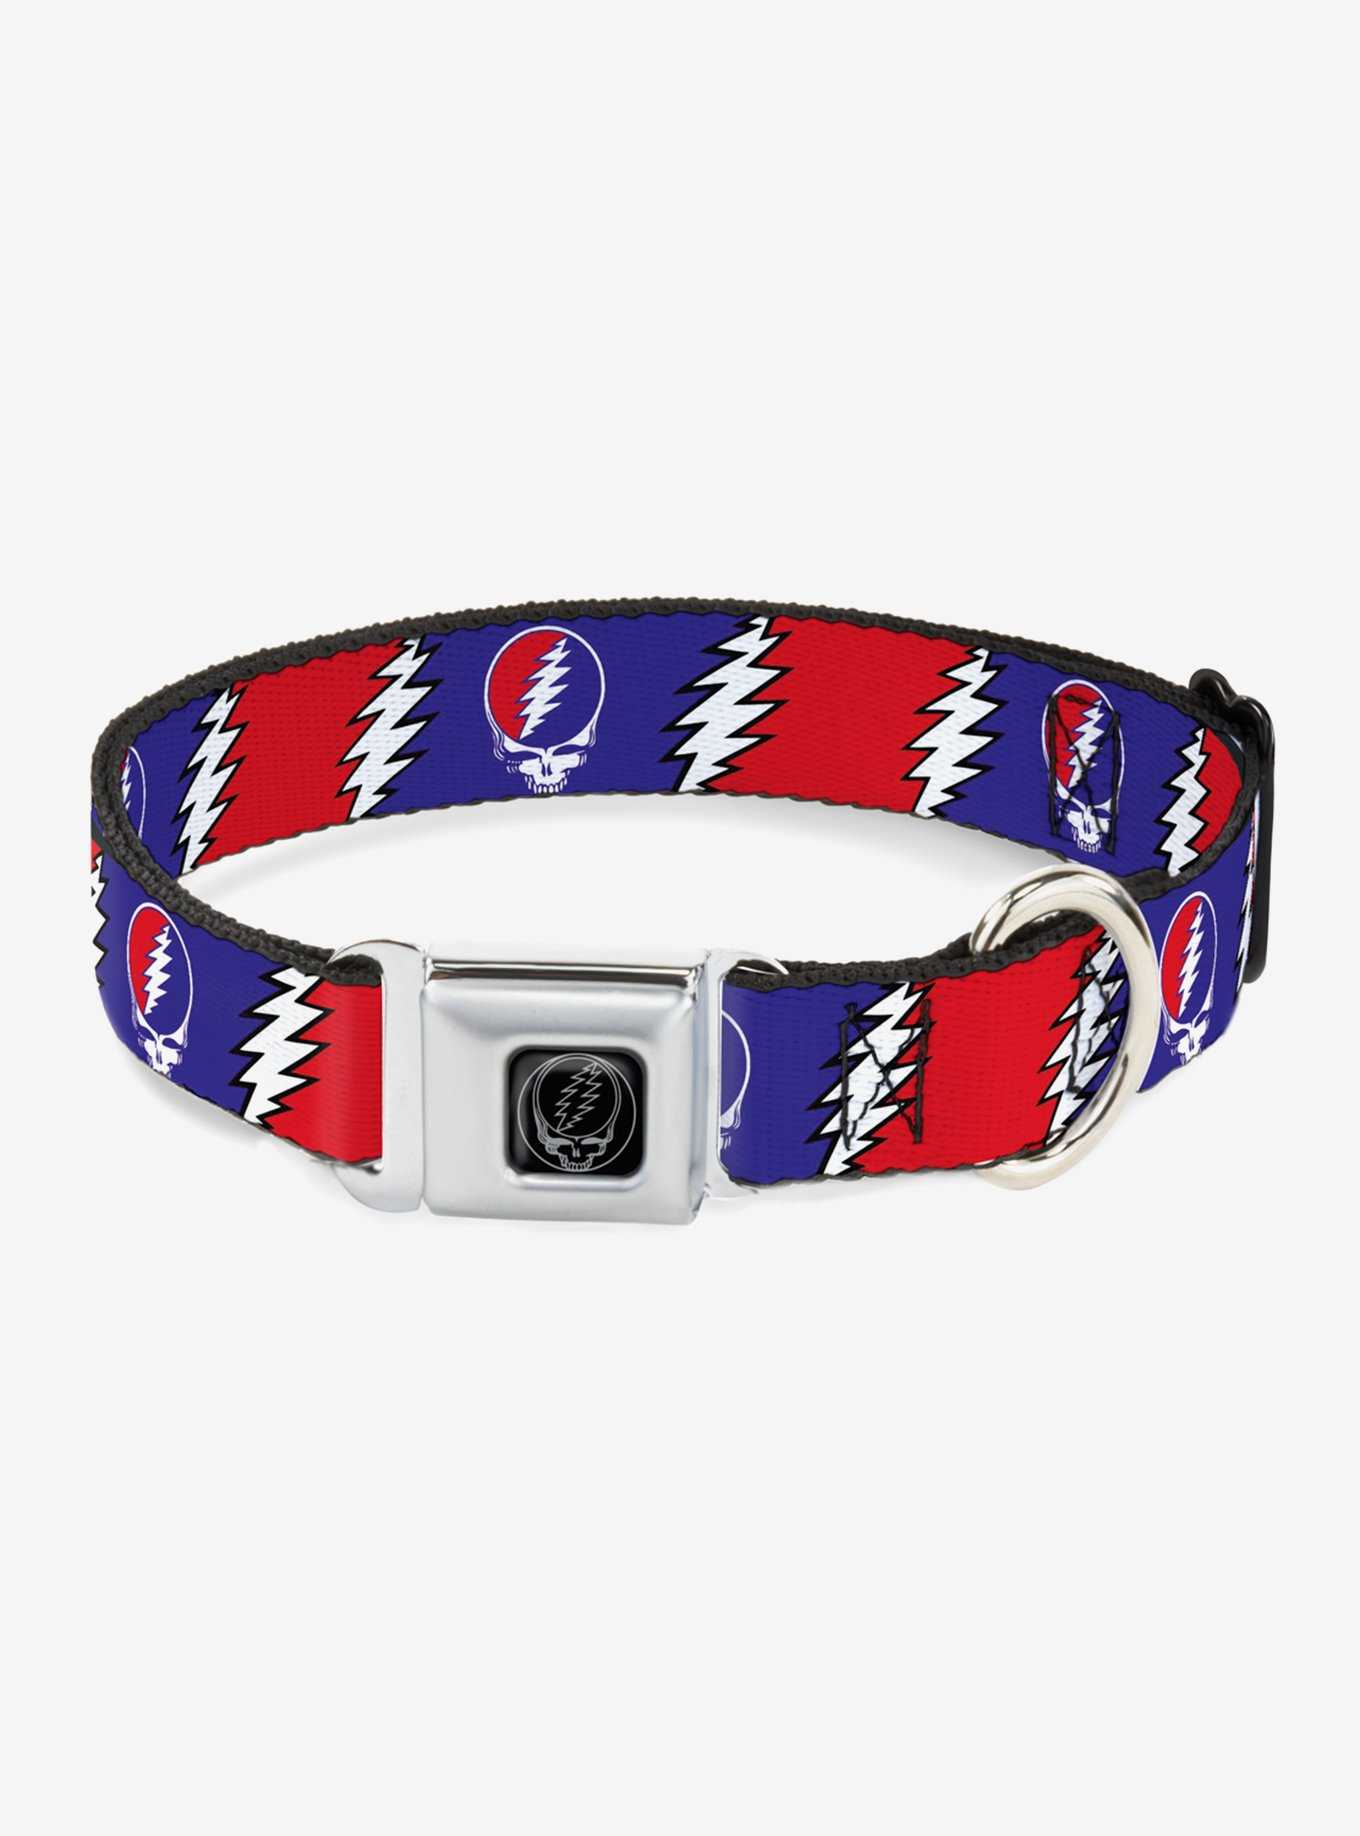 Grateful Dead Steal Your Face Lightning Bolt Seatbelt Buckle Dog Collar, , hi-res